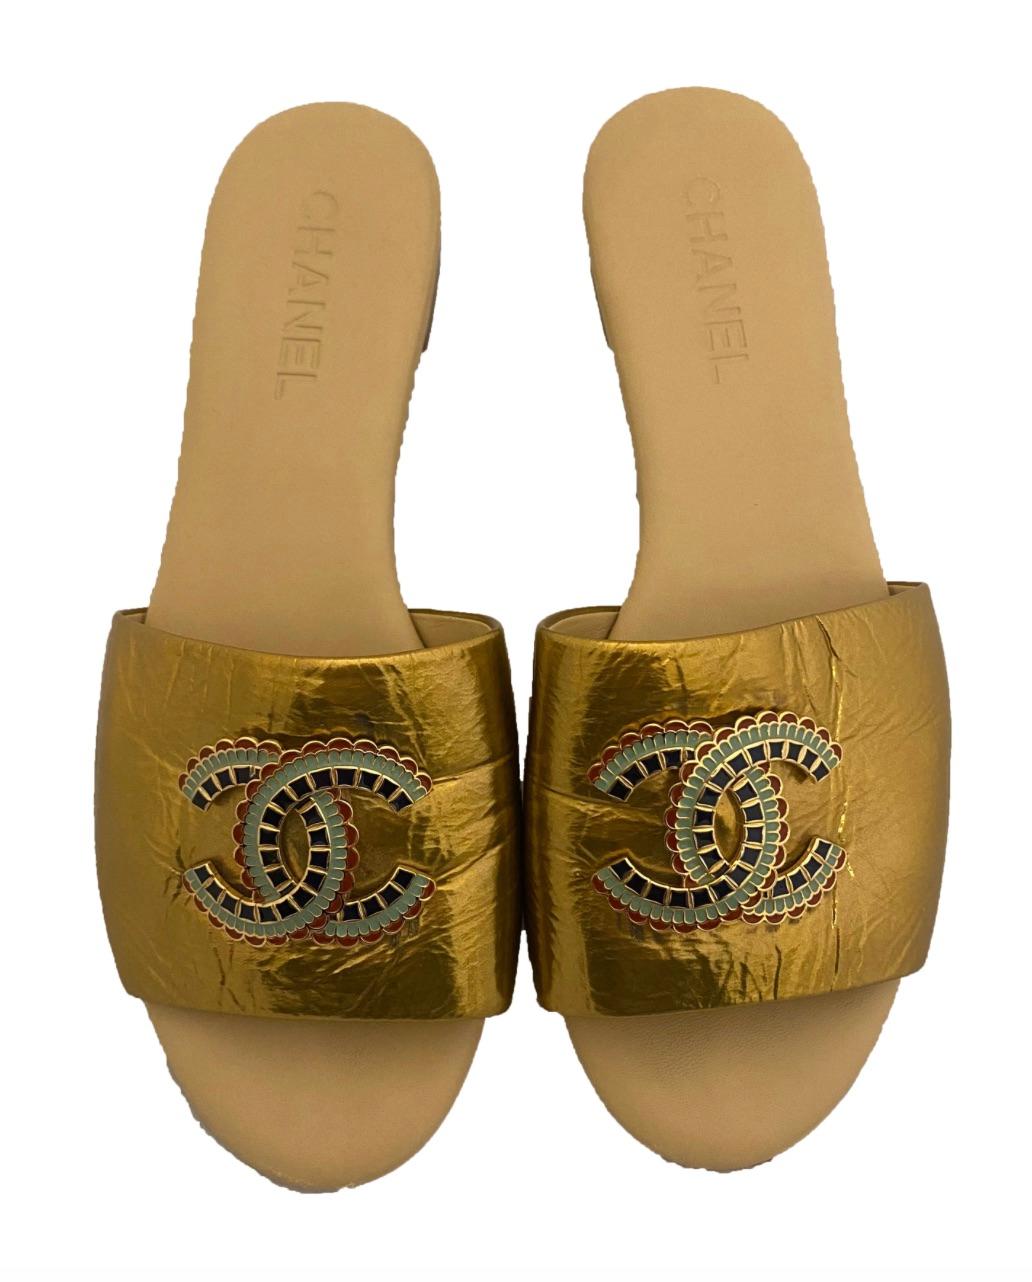 Goldfarbene Metallic-Sandalen aus Lackleder von Chanel. Aus der Chanel Pre-Fall Metiers d'Arts Egyptian Kollektion von 2019, die im Metropolitan Museum of Art gezeigt wurde. Die Zehenriemen aus goldfarbenem Metallic-Lack sind mit dem